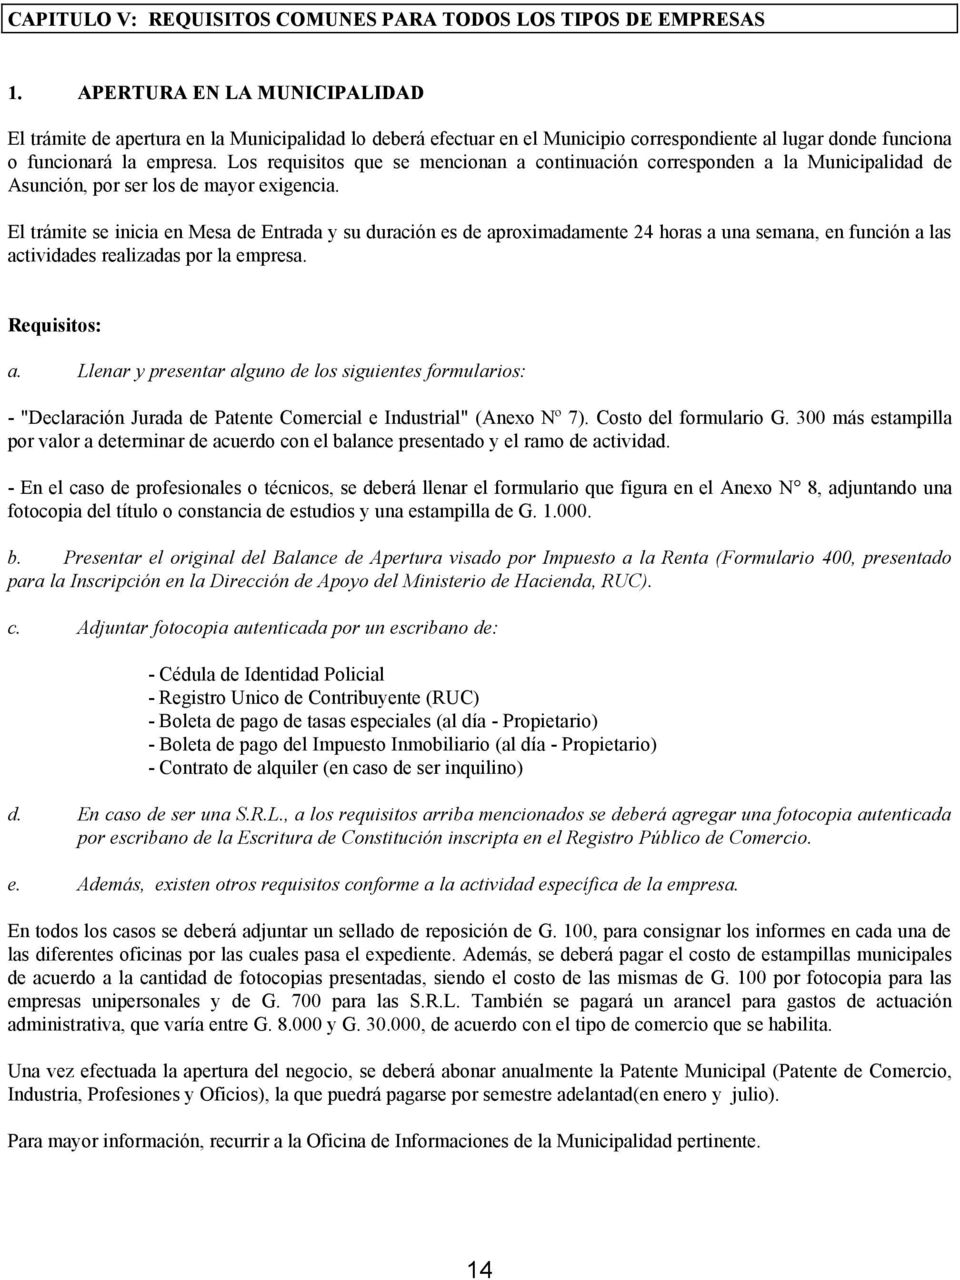 Los requisitos que se mencionan a continuación corresponden a la Municipalidad de Asunción, por ser los de mayor exigencia.